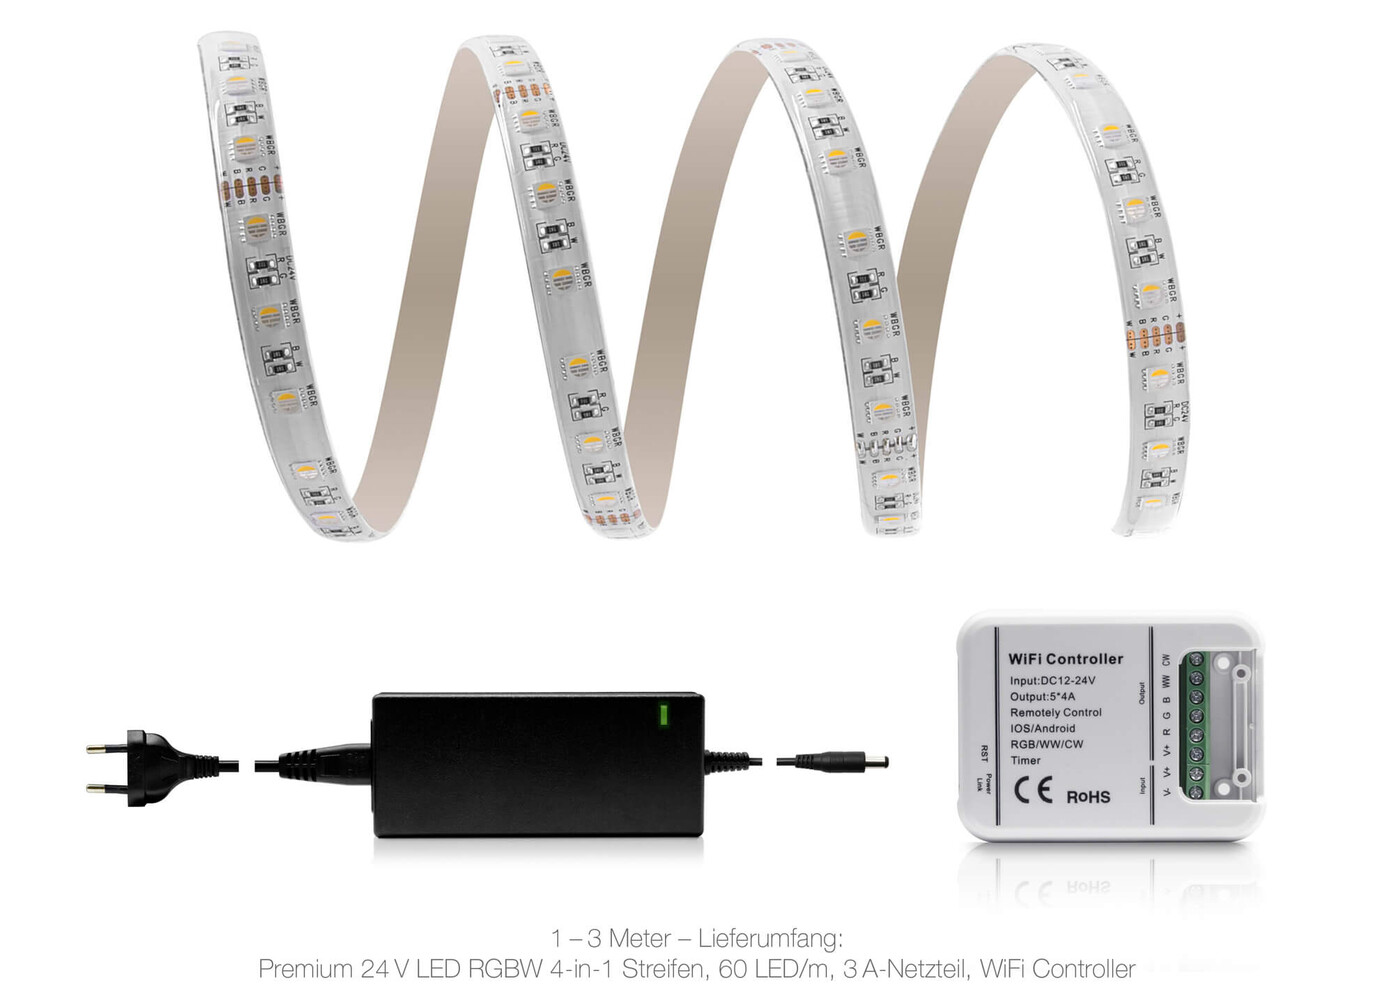 Hochwertiger bunter LED-Streifen von LED Universum mit fortschrittlicher WLAN-Steuerung und fortschrittlichem IP65-Schutz